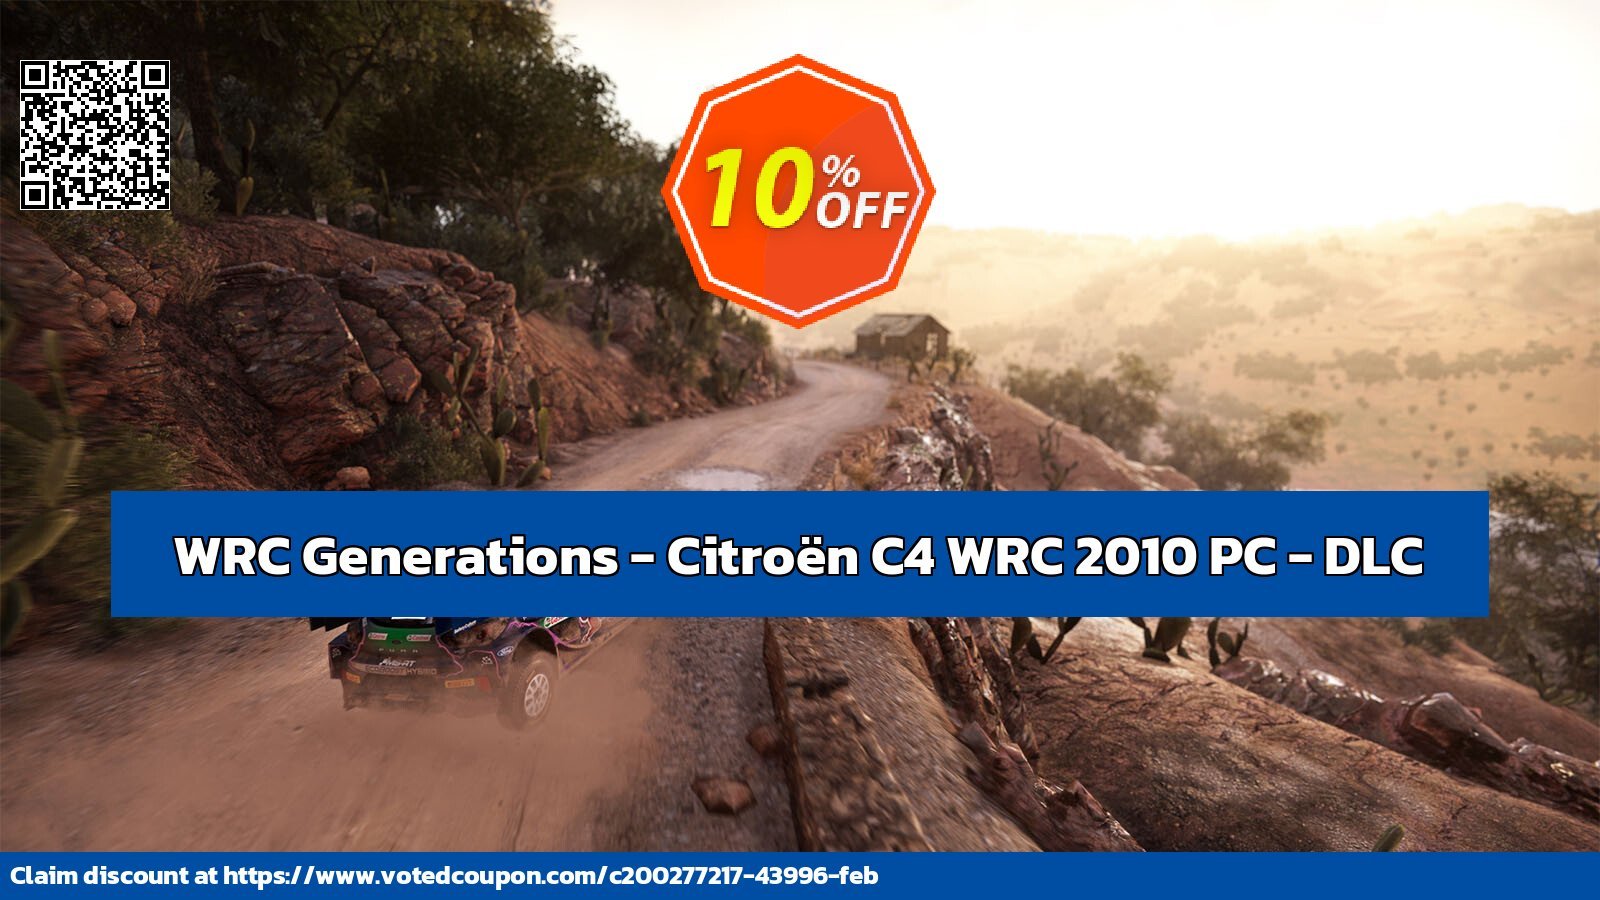 WRC Generations - Citroën C4 WRC 2010 PC - DLC Coupon, discount WRC Generations - Citroën C4 WRC 2010 PC - DLC Deal CDkeys. Promotion: WRC Generations - Citroën C4 WRC 2010 PC - DLC Exclusive Sale offer